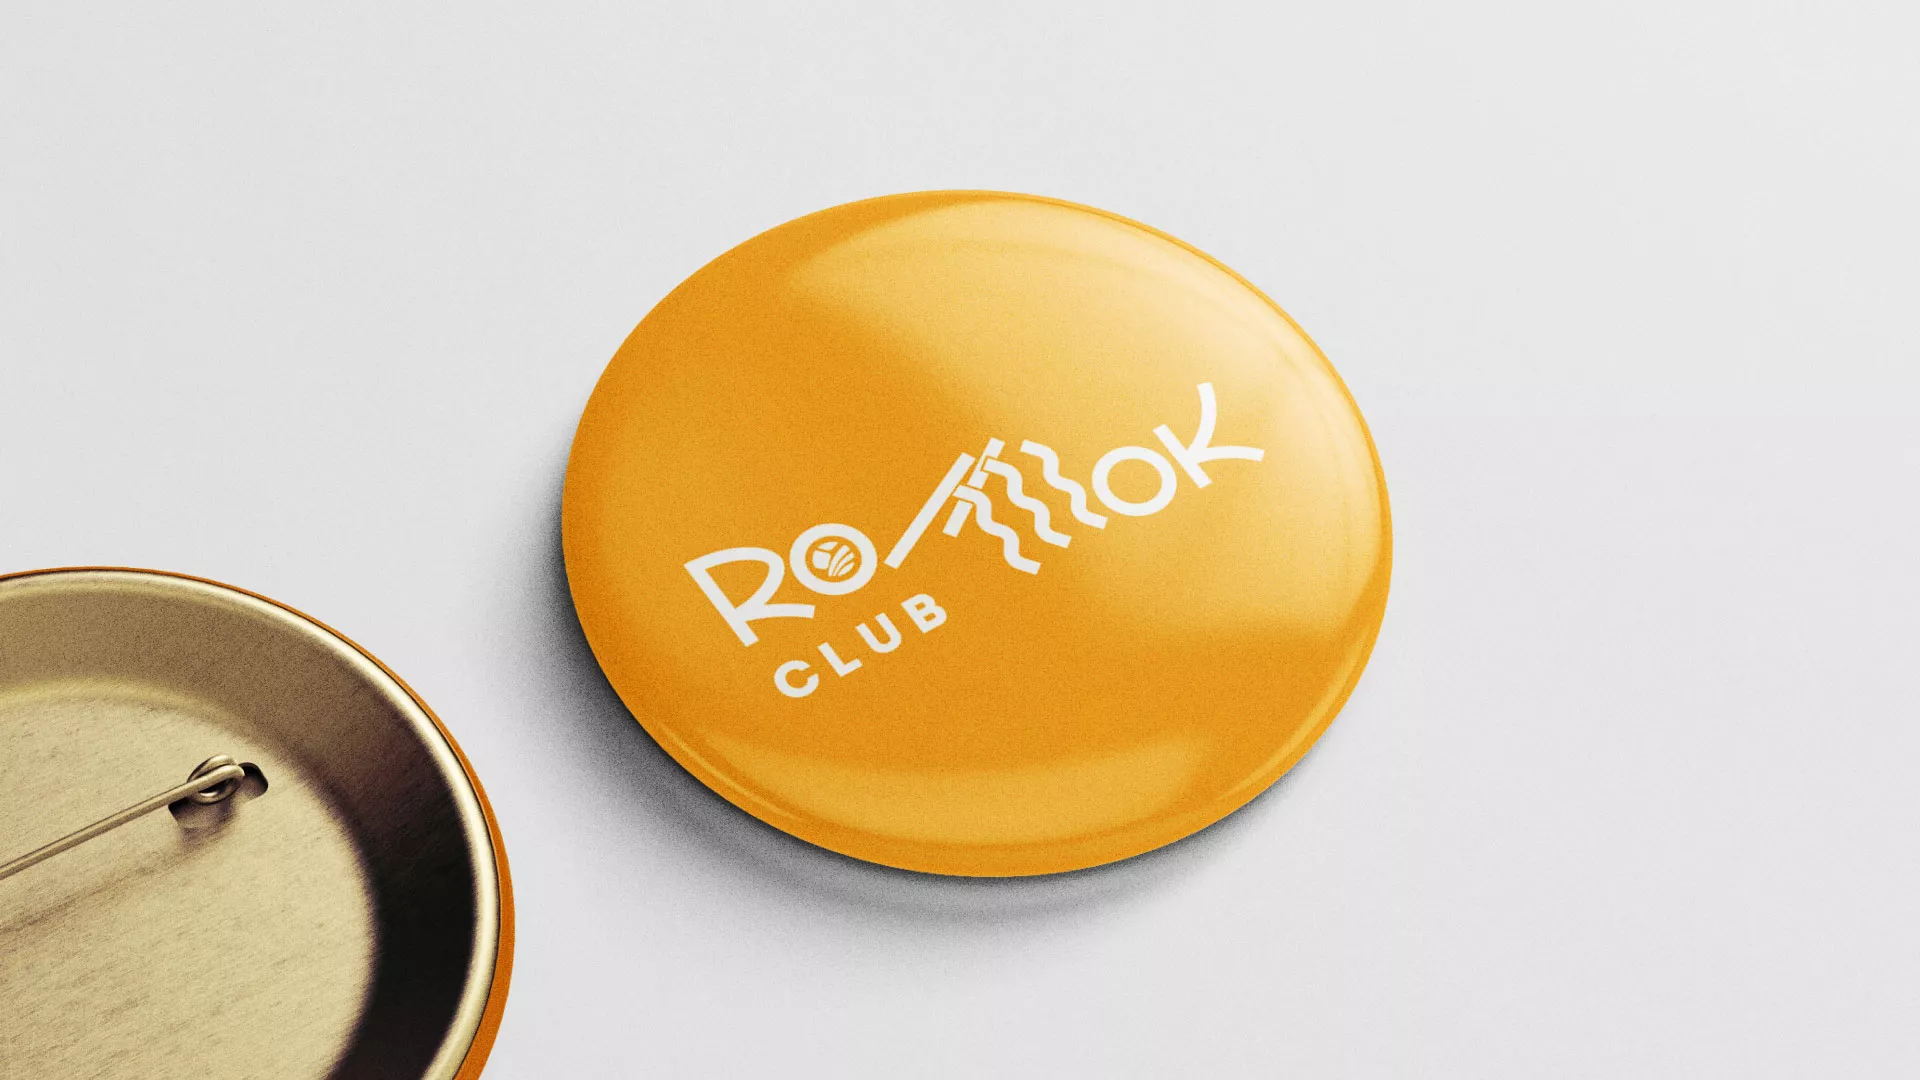 Создание логотипа суши-бара «Roll Wok Club» в Верхотурье